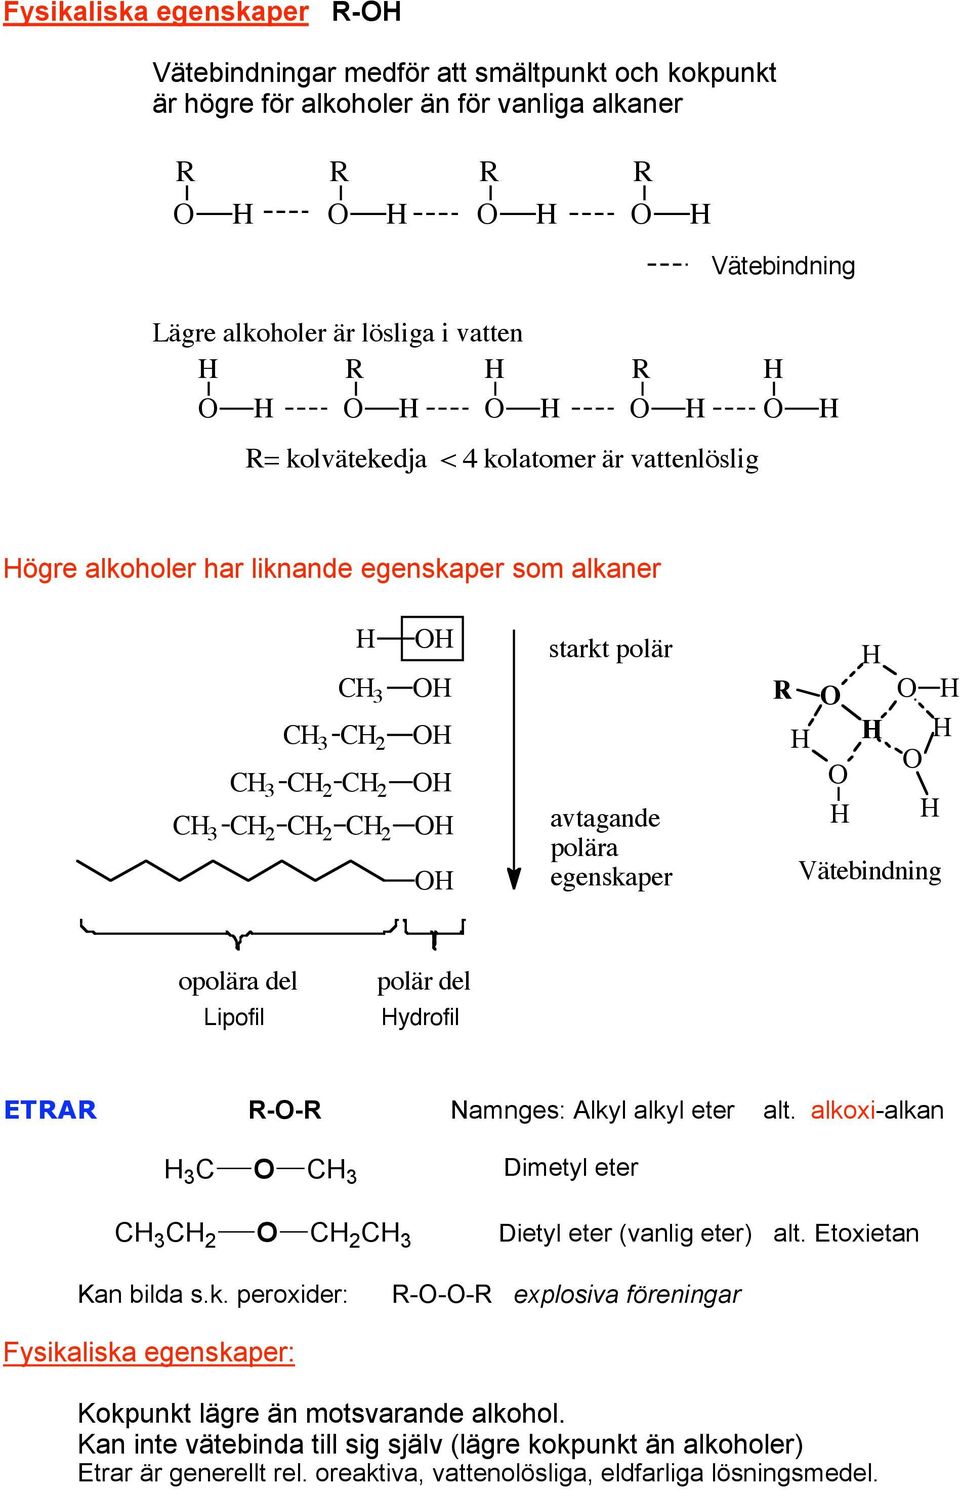 ydrofil ETA -- amnges: Alkyl alkyl eter alt. alkoxi-alkan 3 3 3 2 2 3 Dimetyl eter Dietyl eter (vanlig eter) alt. Etoxietan Kan bilda s.k. peroxider: --- explosiva föreningar Fysikaliska egenskaper: Kokpunkt lägre än motsvarande alkohol.